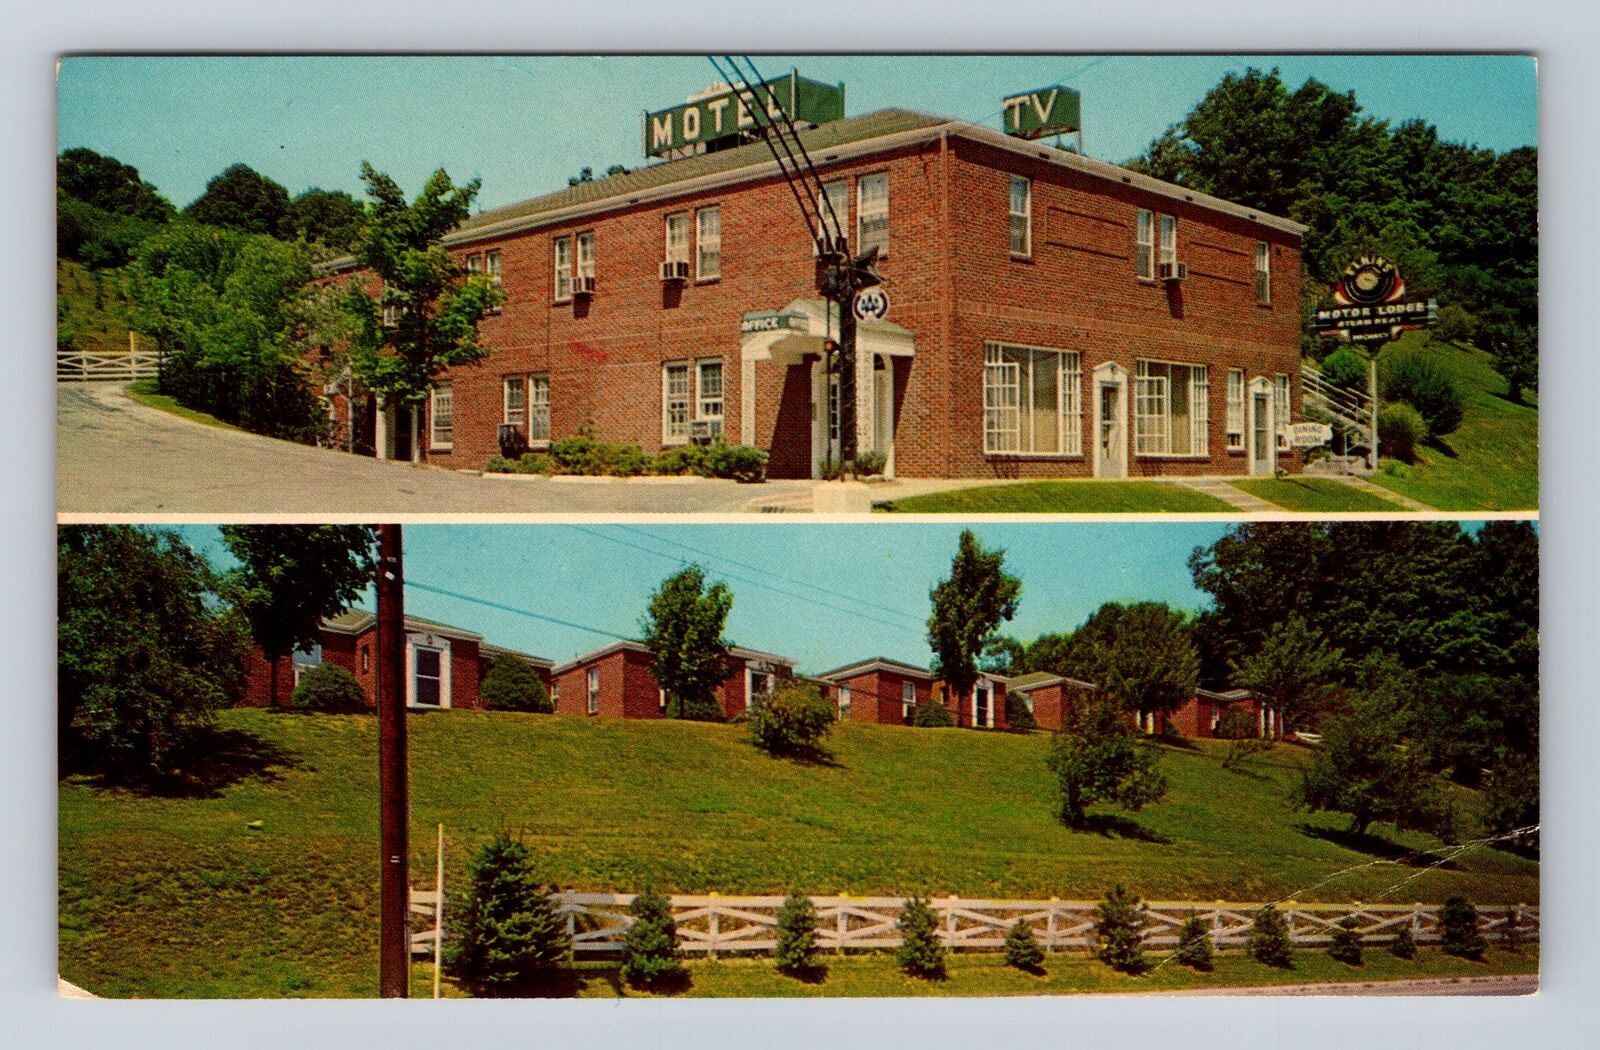 Elkins WV-West Virginia, Elkins Motor Lodge, Rt. 4, Advertising Vintage Postcard